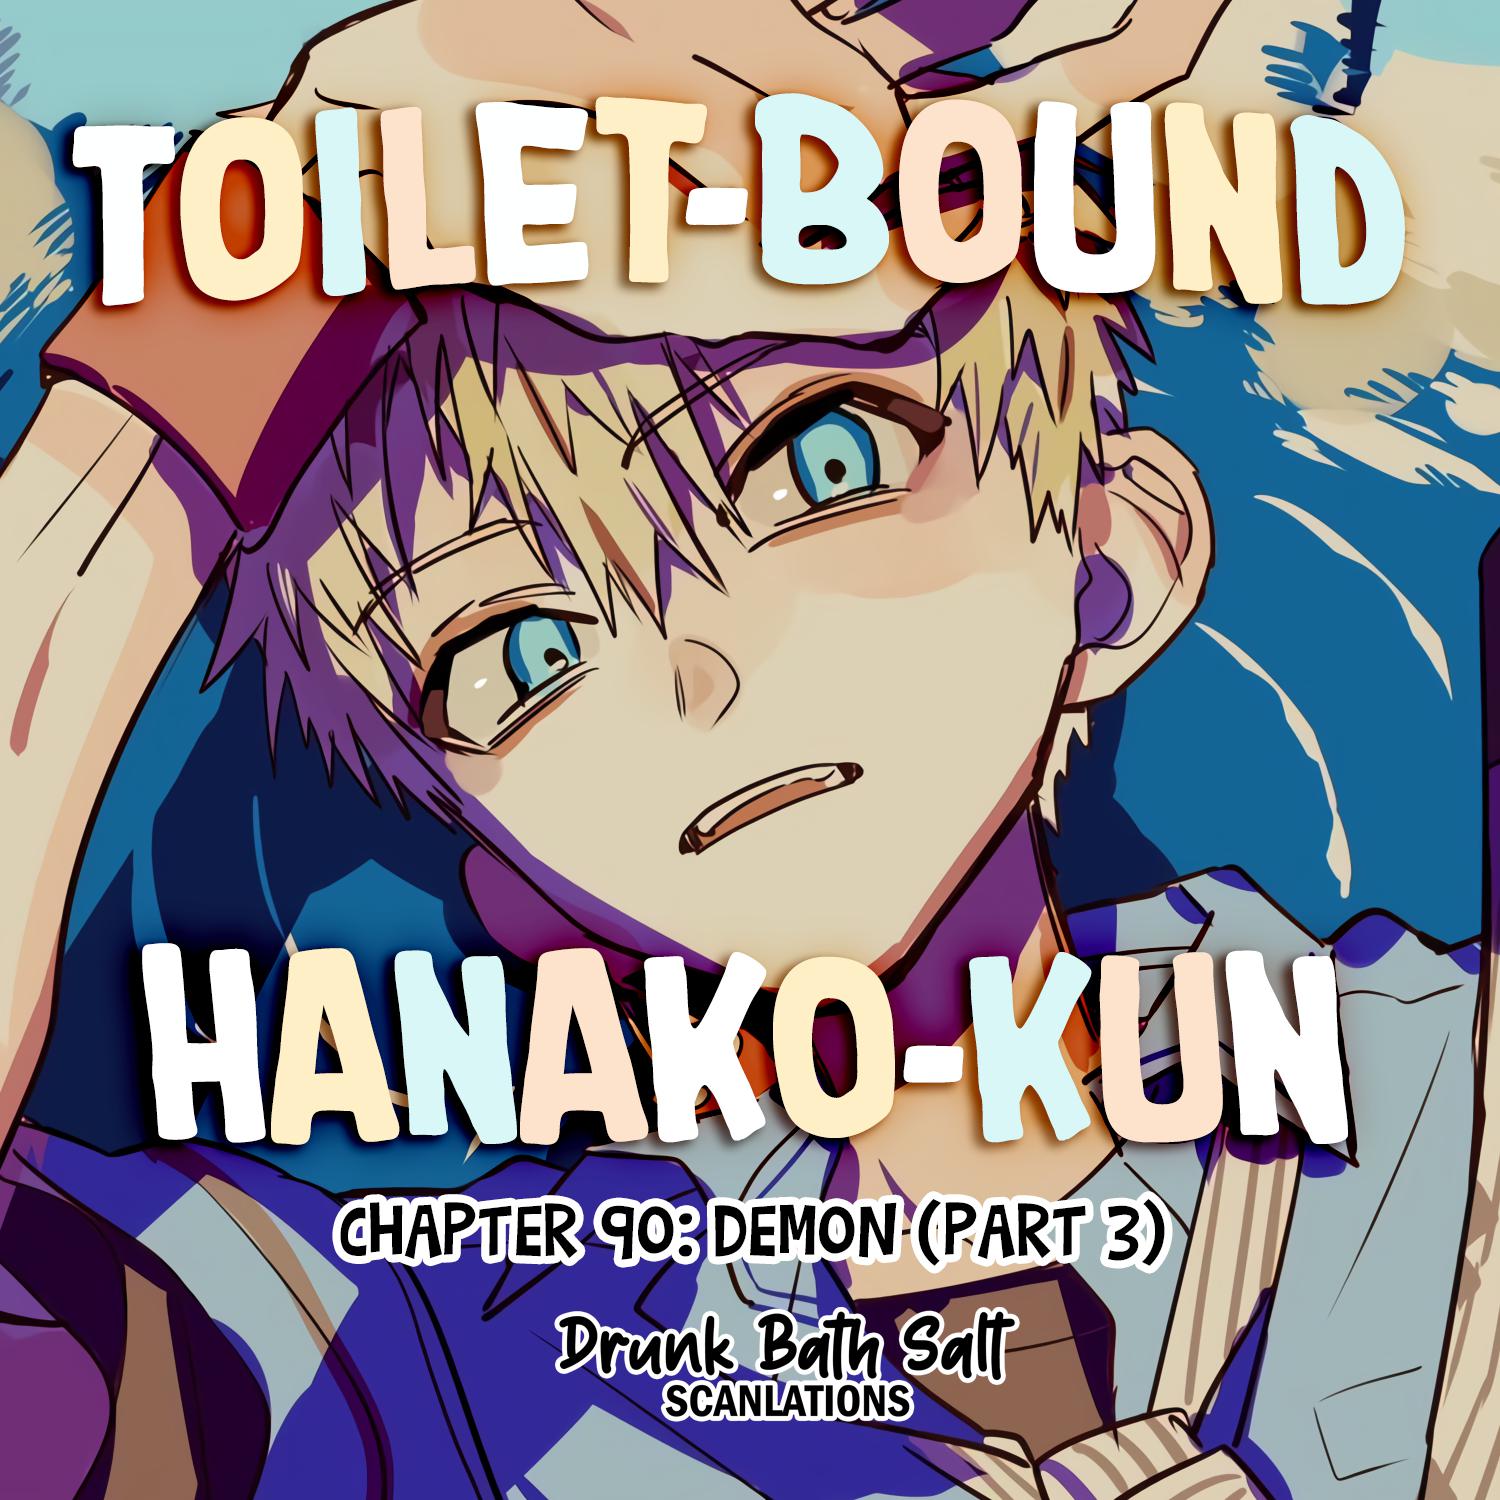 Toilet-bound Hanako-kun chapter 90, Jibaku Shounen Hanako-kun Chapter 90